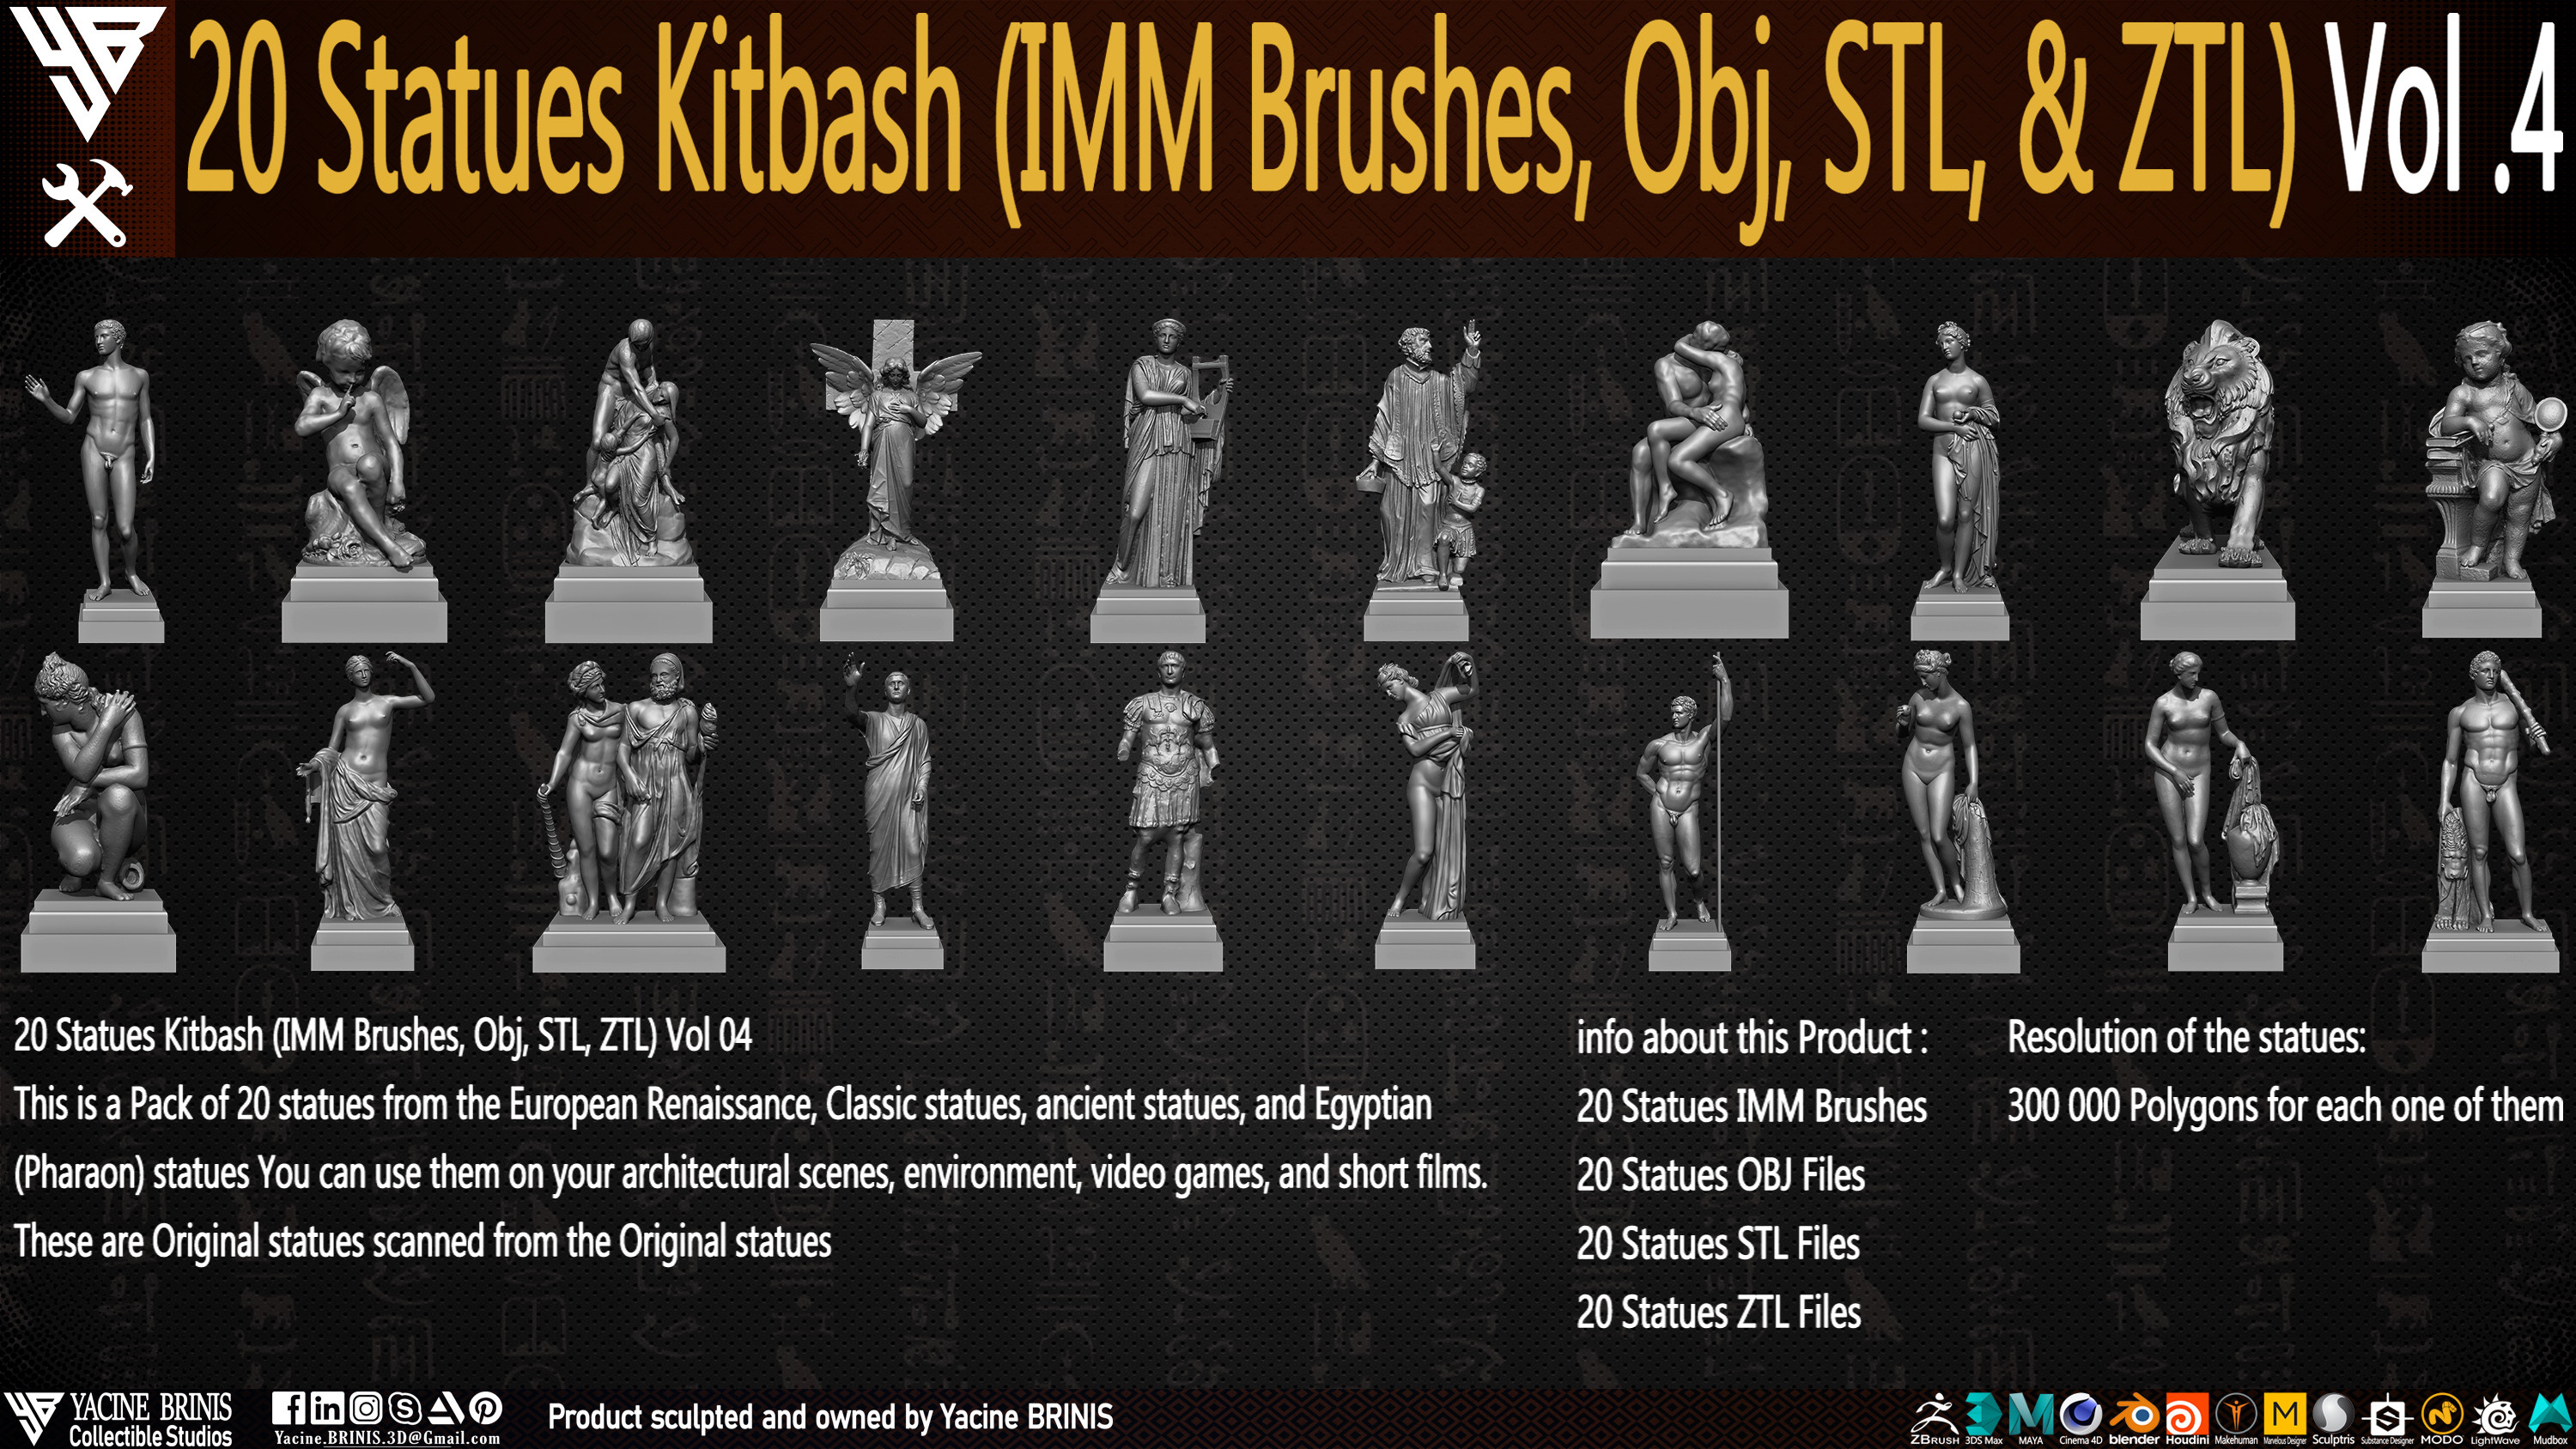 Statues Kitbash by yacine brinis Set 22